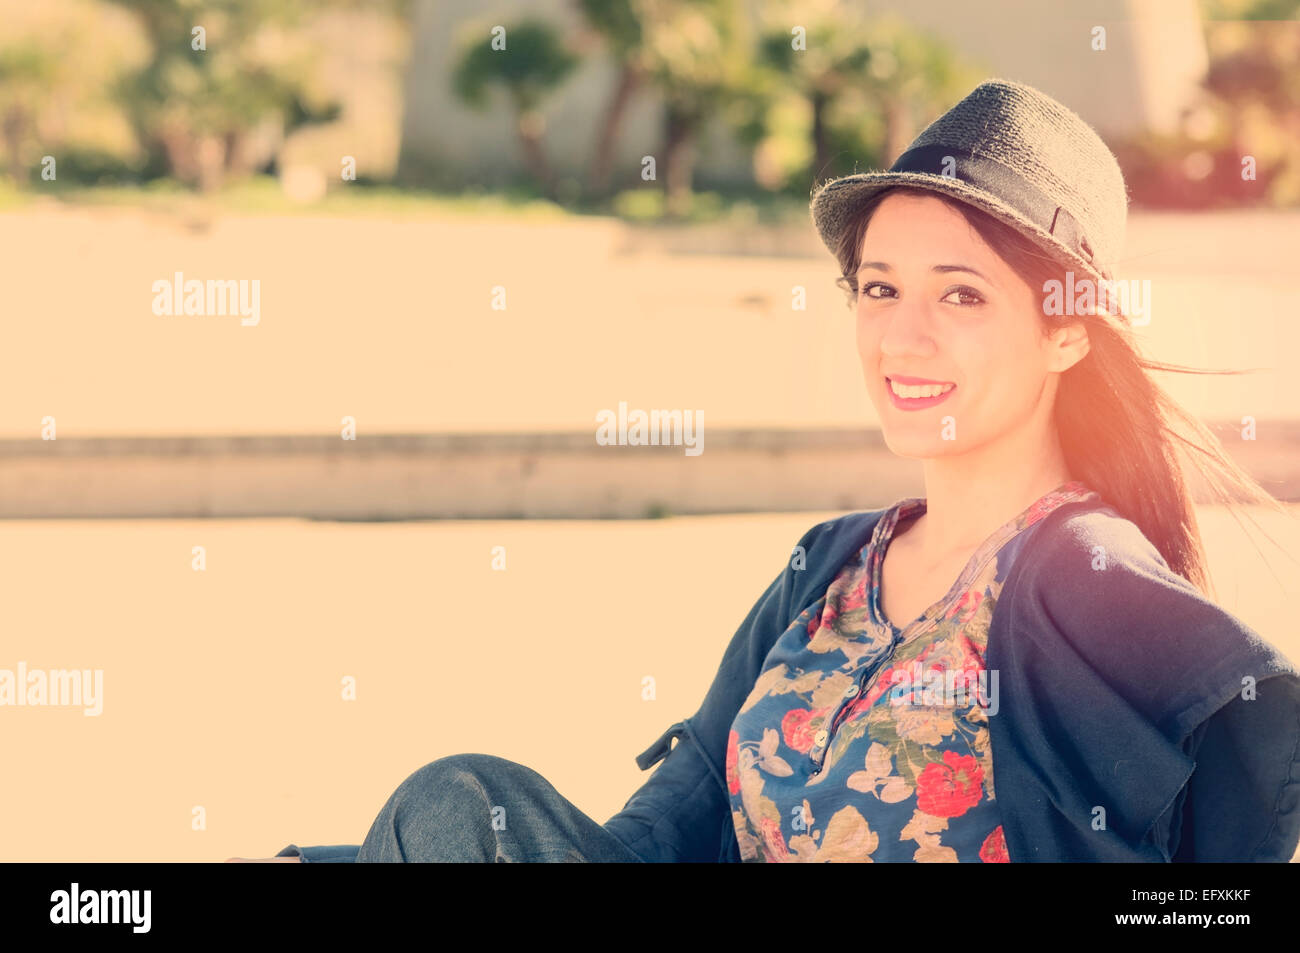 Una joven sonriente en un día soleado y instagram filtro aplicado Foto de stock